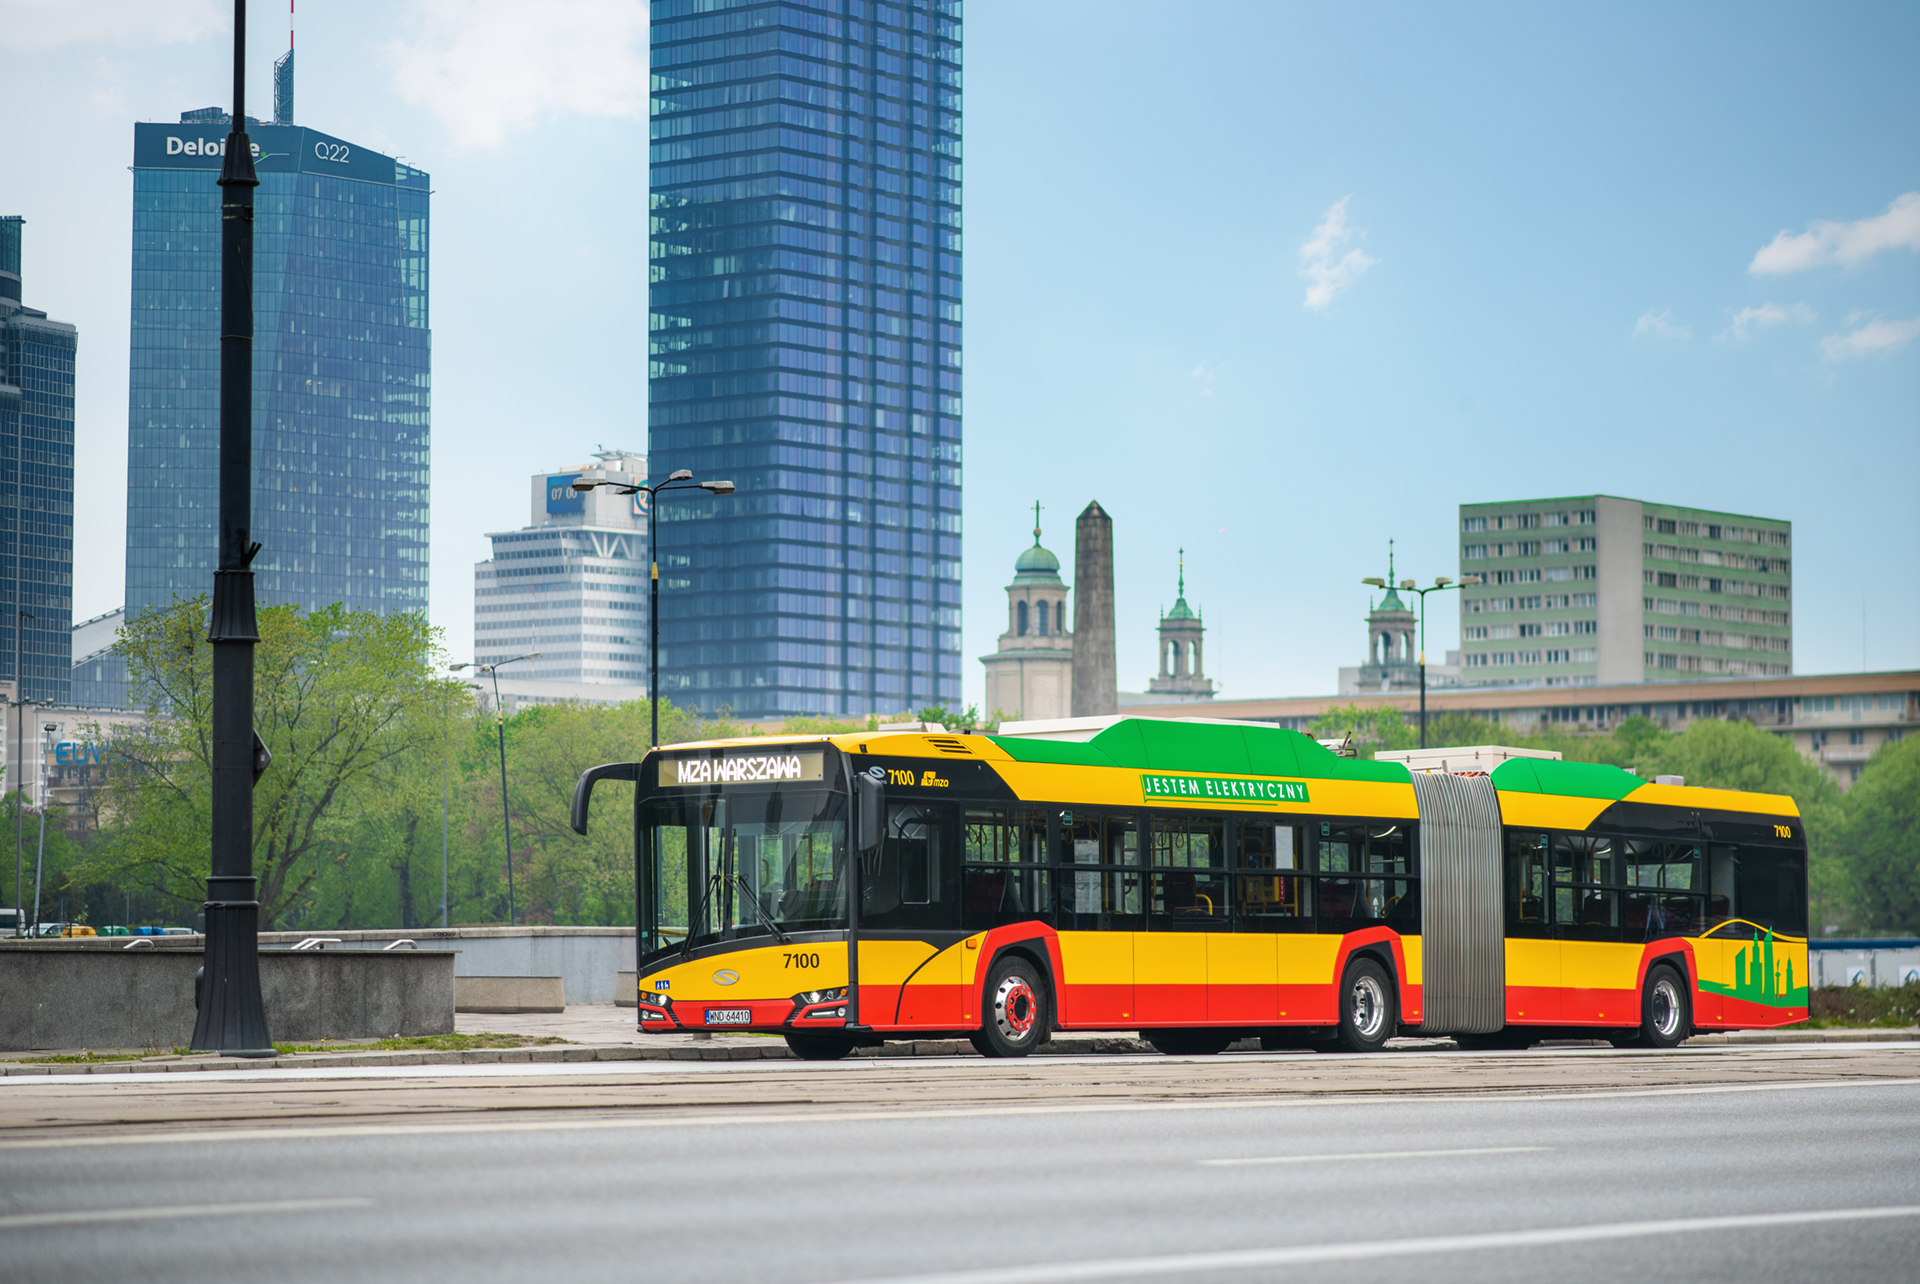 Solaris dostarczy do Warszawy 130 autobusów Urbino 18 electric - Transport  i logistyka - Forbes.pl